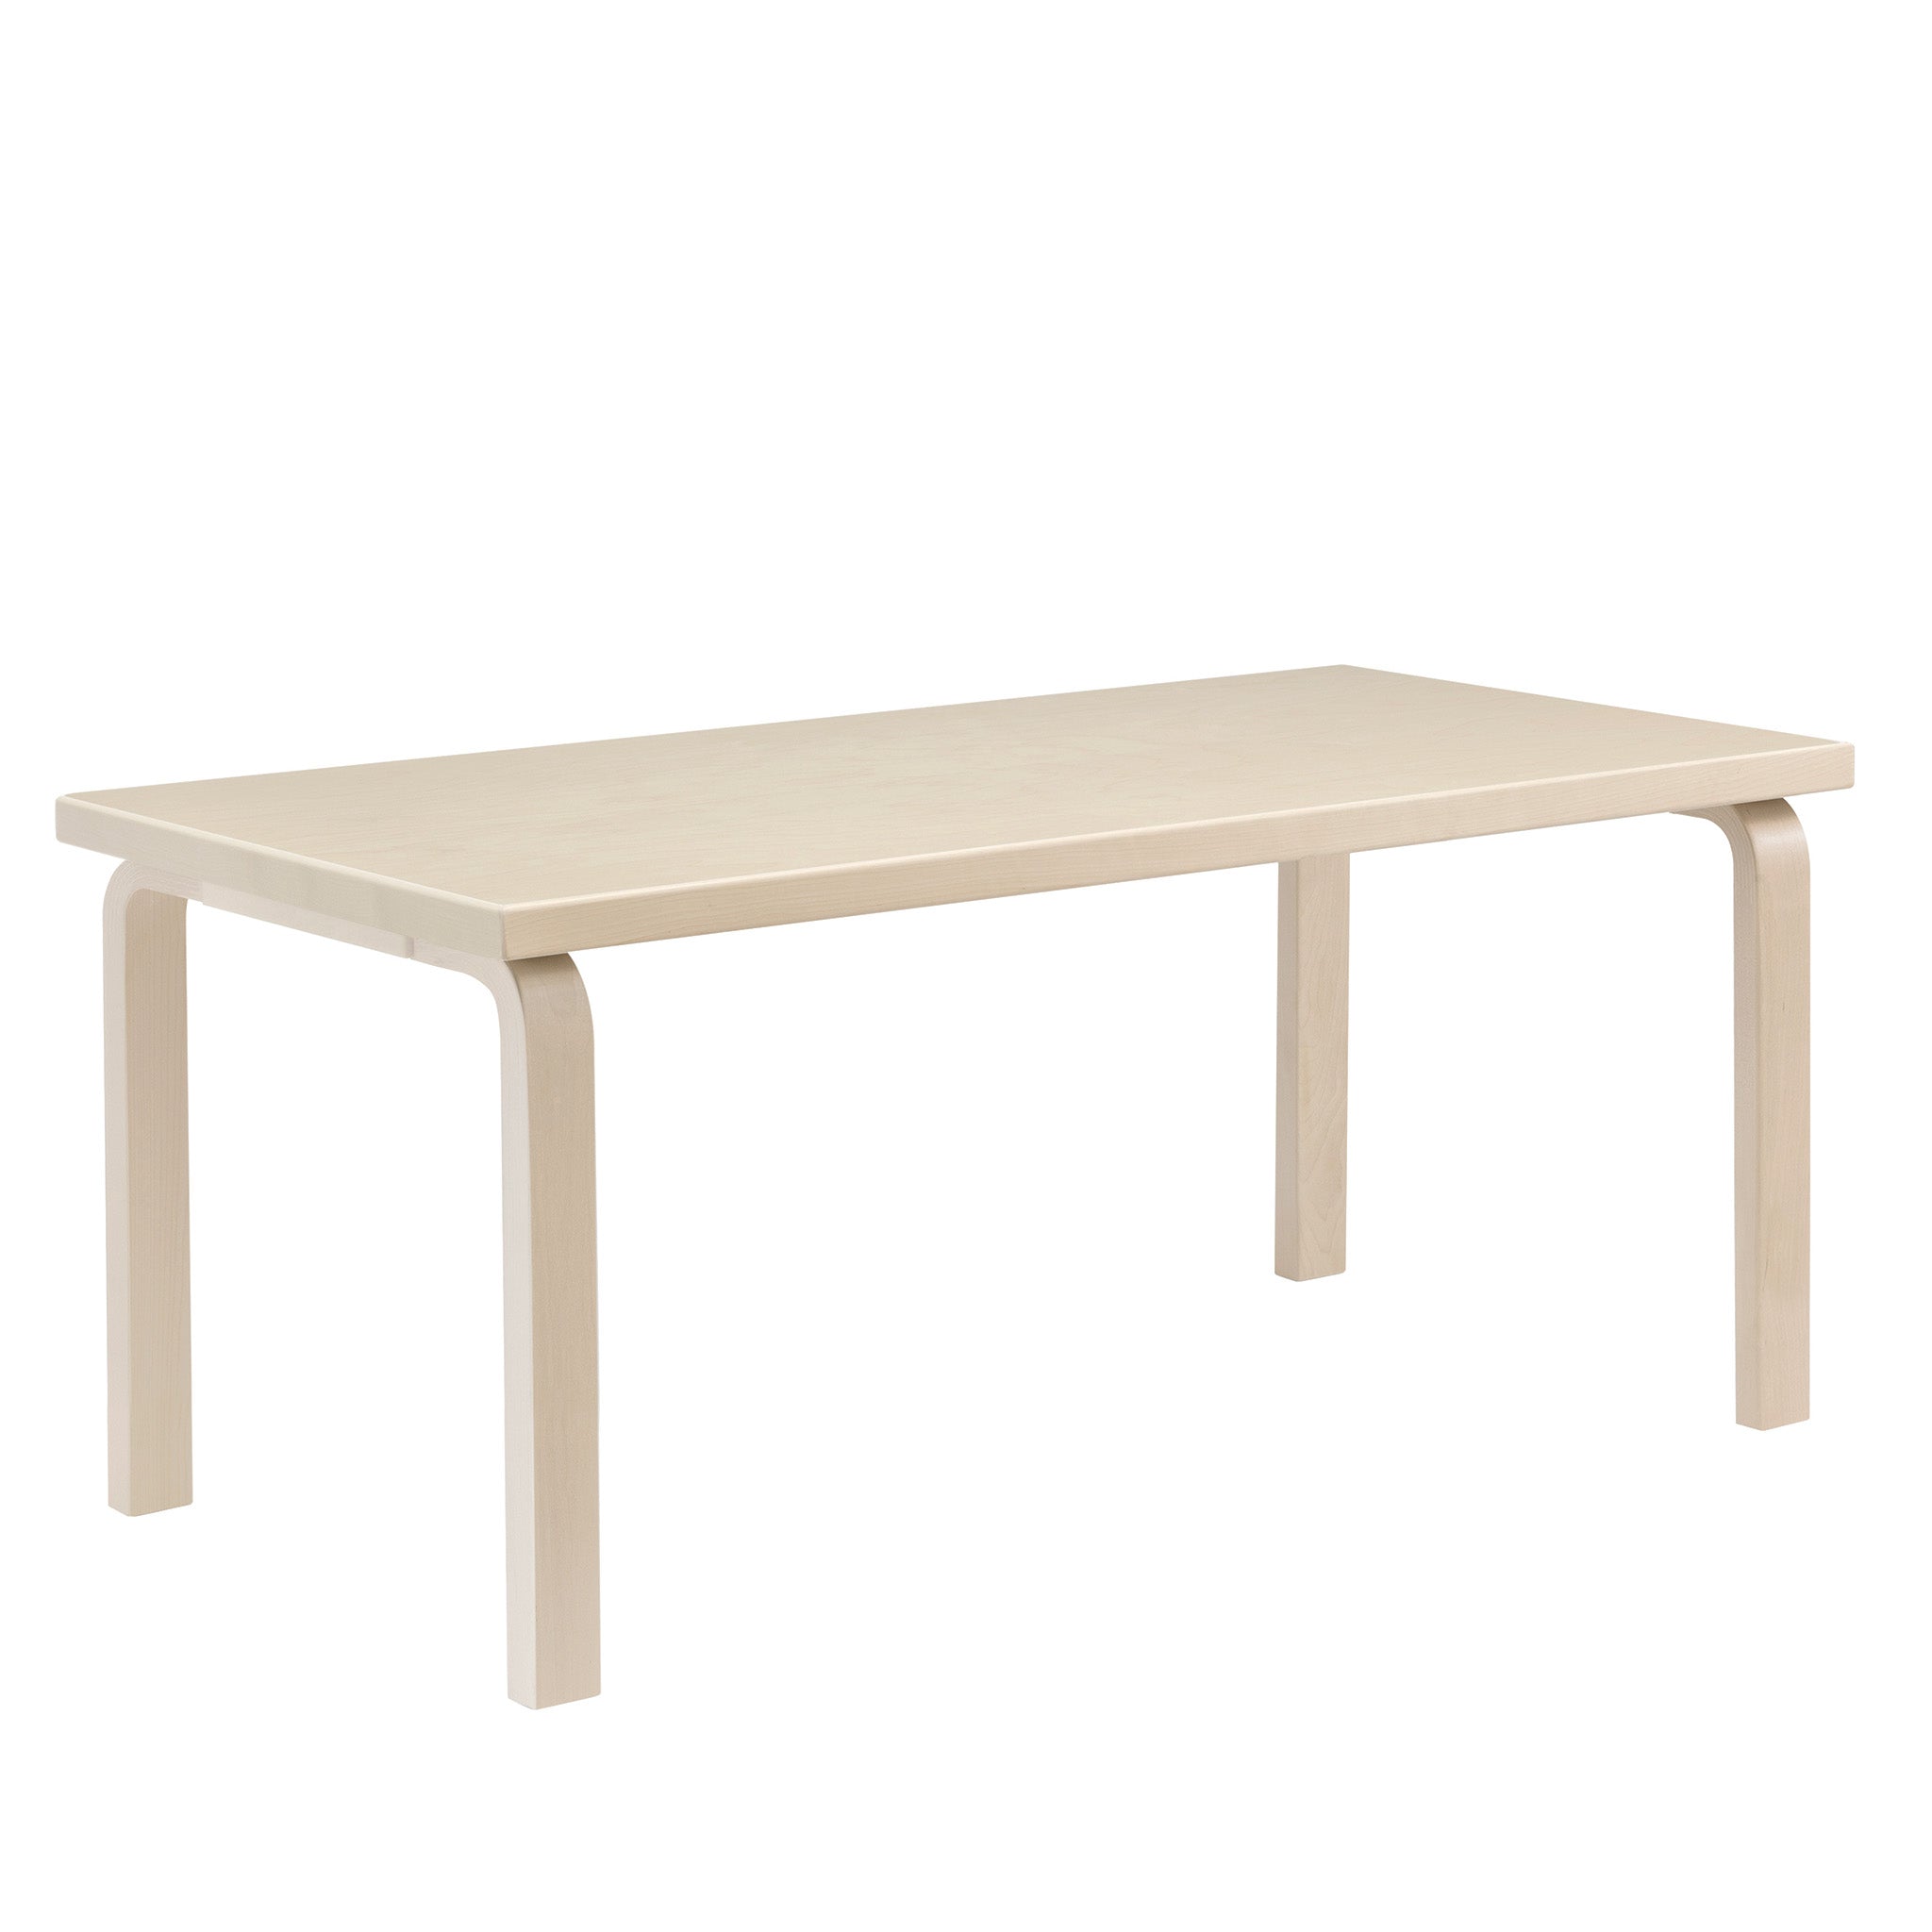 Aalto 83 Table by Artek